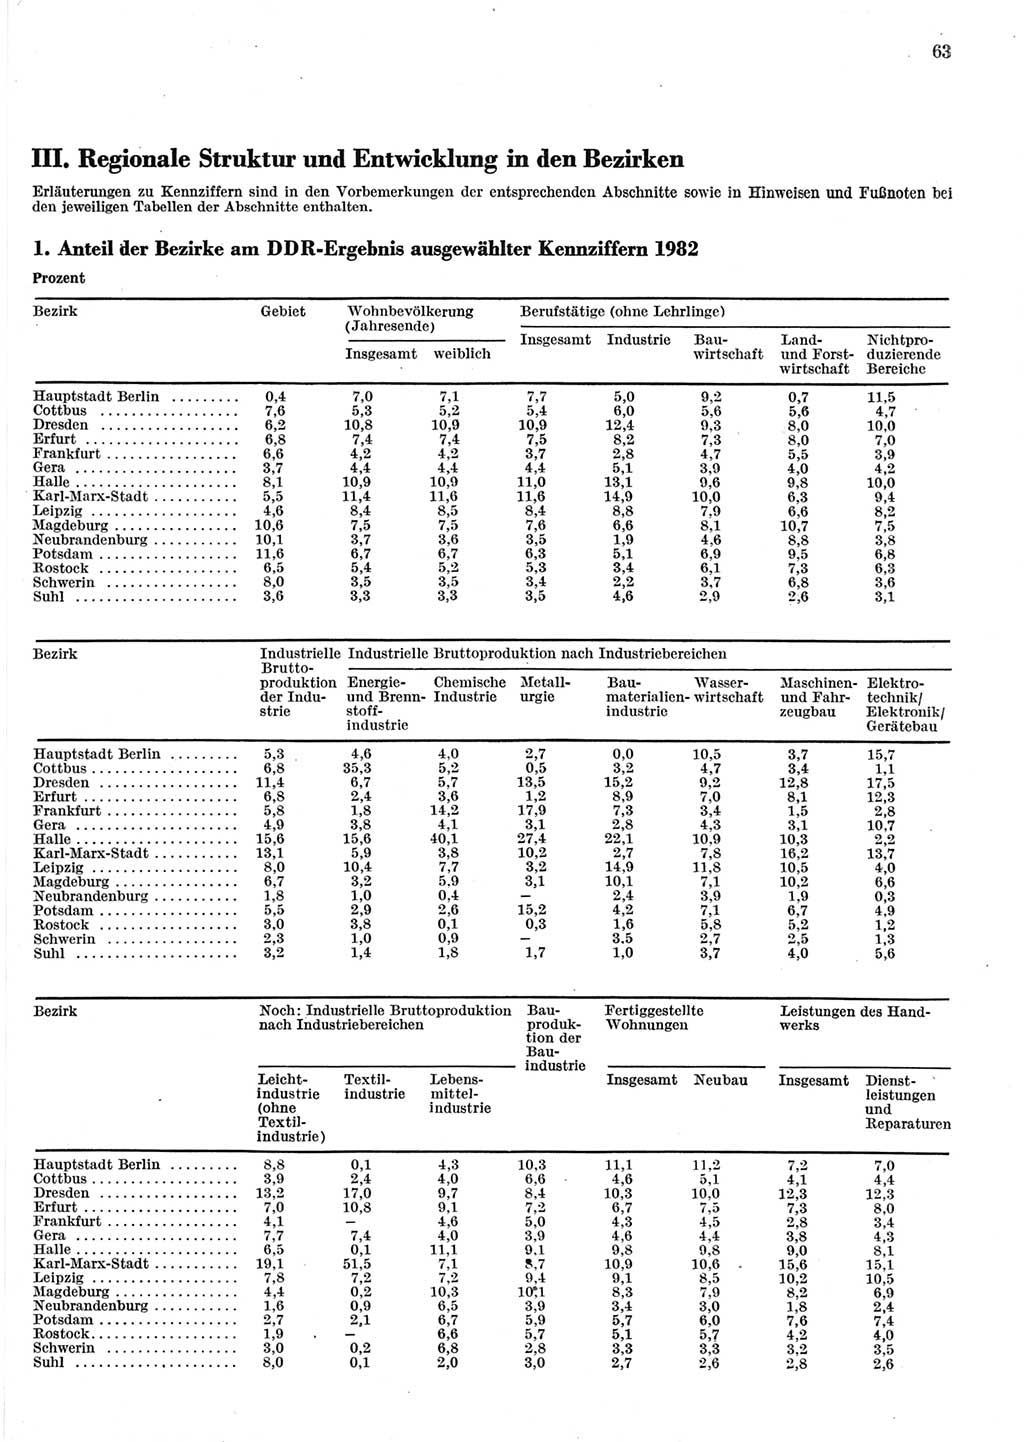 Statistisches Jahrbuch der Deutschen Demokratischen Republik (DDR) 1983, Seite 63 (Stat. Jb. DDR 1983, S. 63)